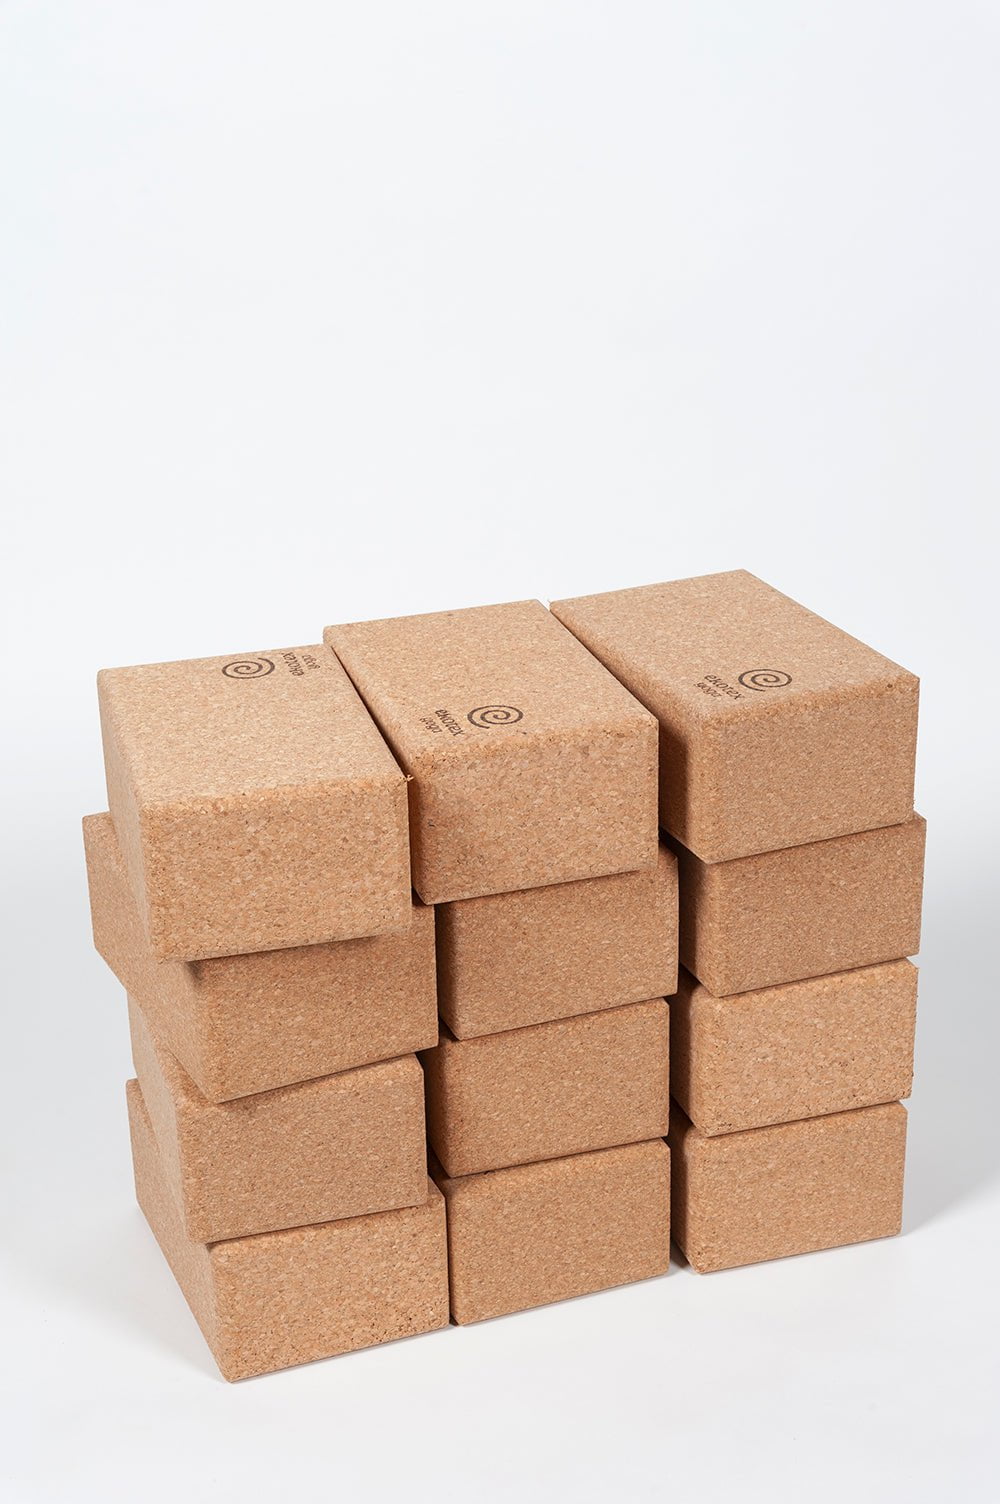 Yoga Blocks Pack of 12 Large Cork Yoga Brick - Pack of 12